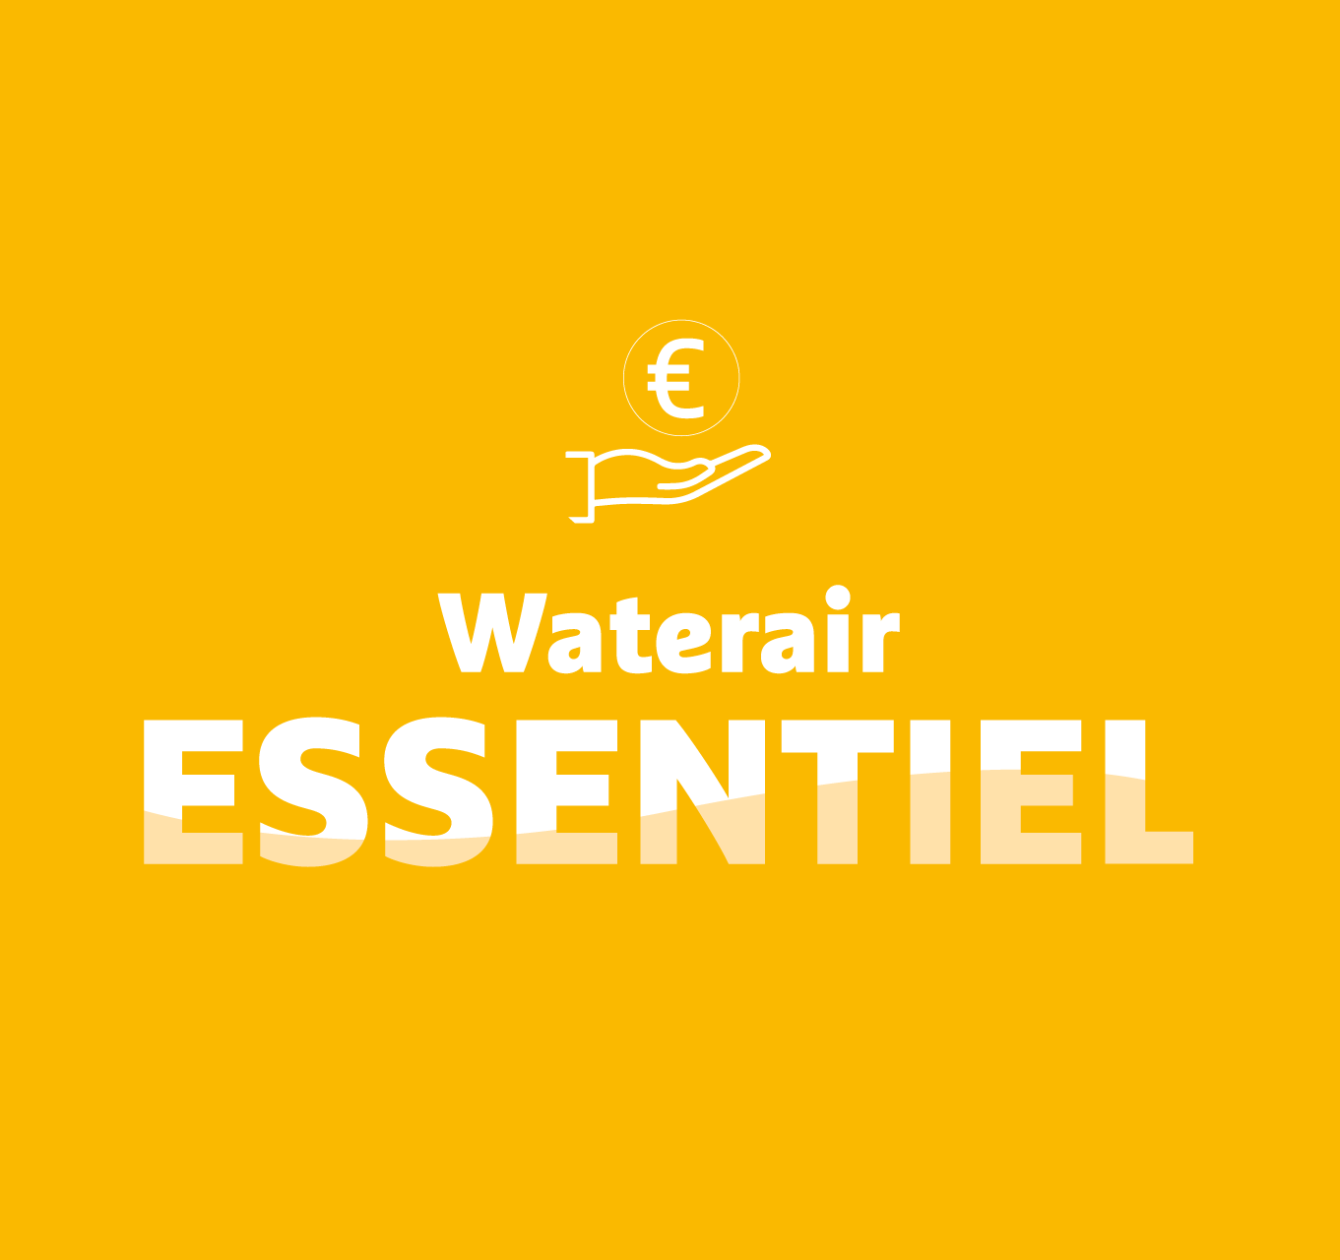 Waterair Essentiel: uw duurzame zwembad voor de juiste prijs